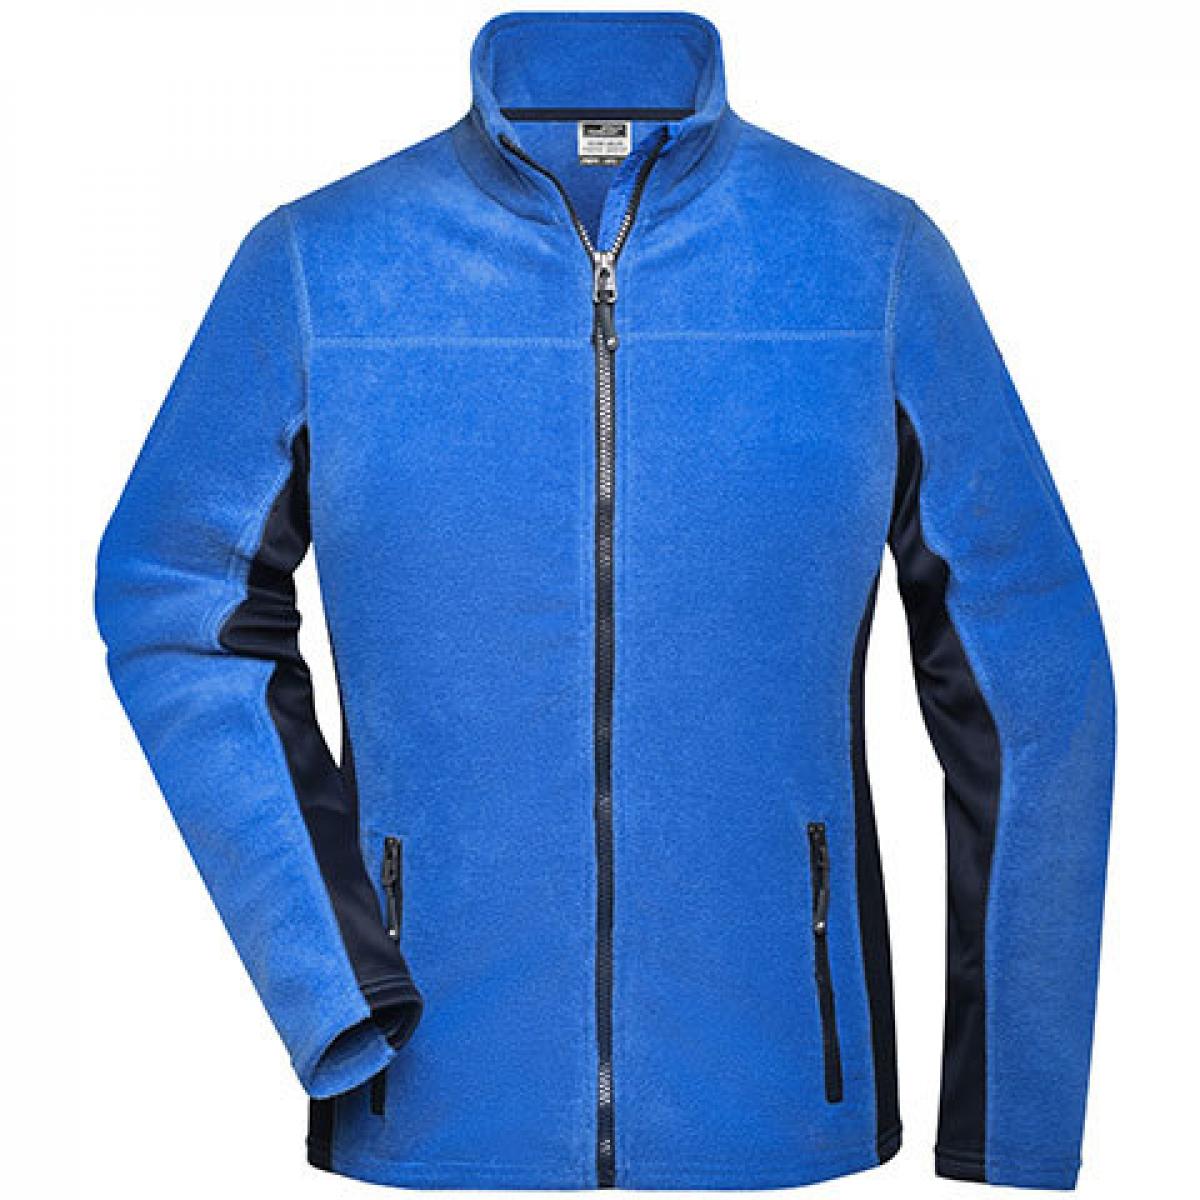 Hersteller: James+Nicholson Herstellernummer: JN841 Artikelbezeichnung: Damen‘ Workwear Fleece Jacket -STRONG- Farbe: Royal/Navy